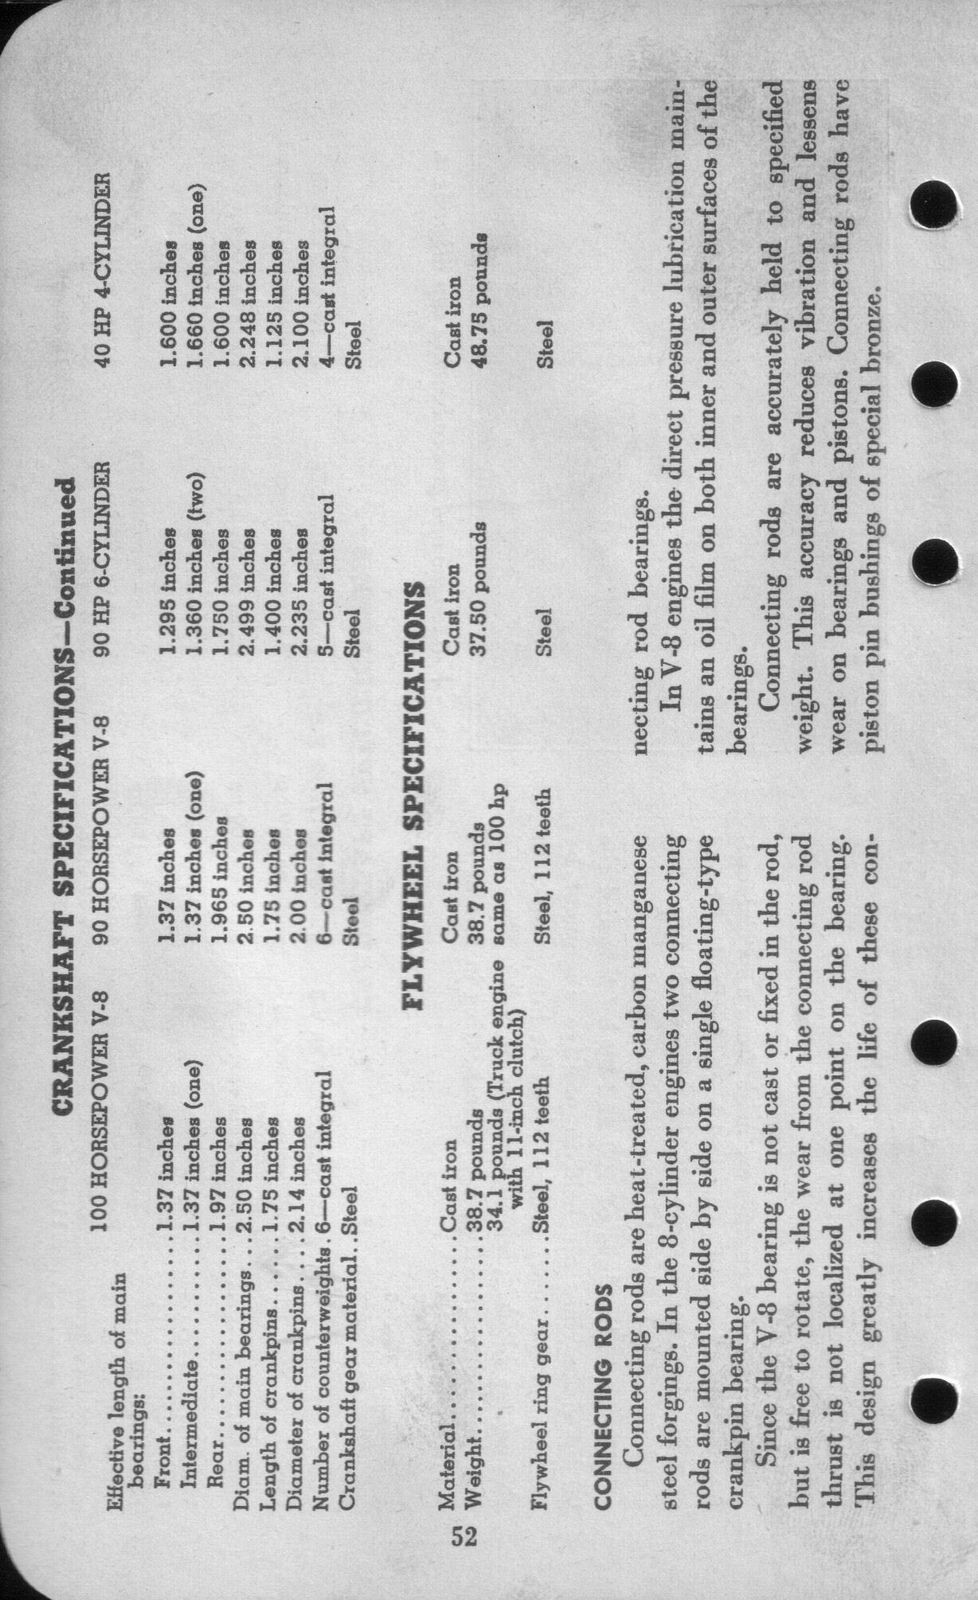 n_1942 Ford Salesmans Reference Manual-052.jpg